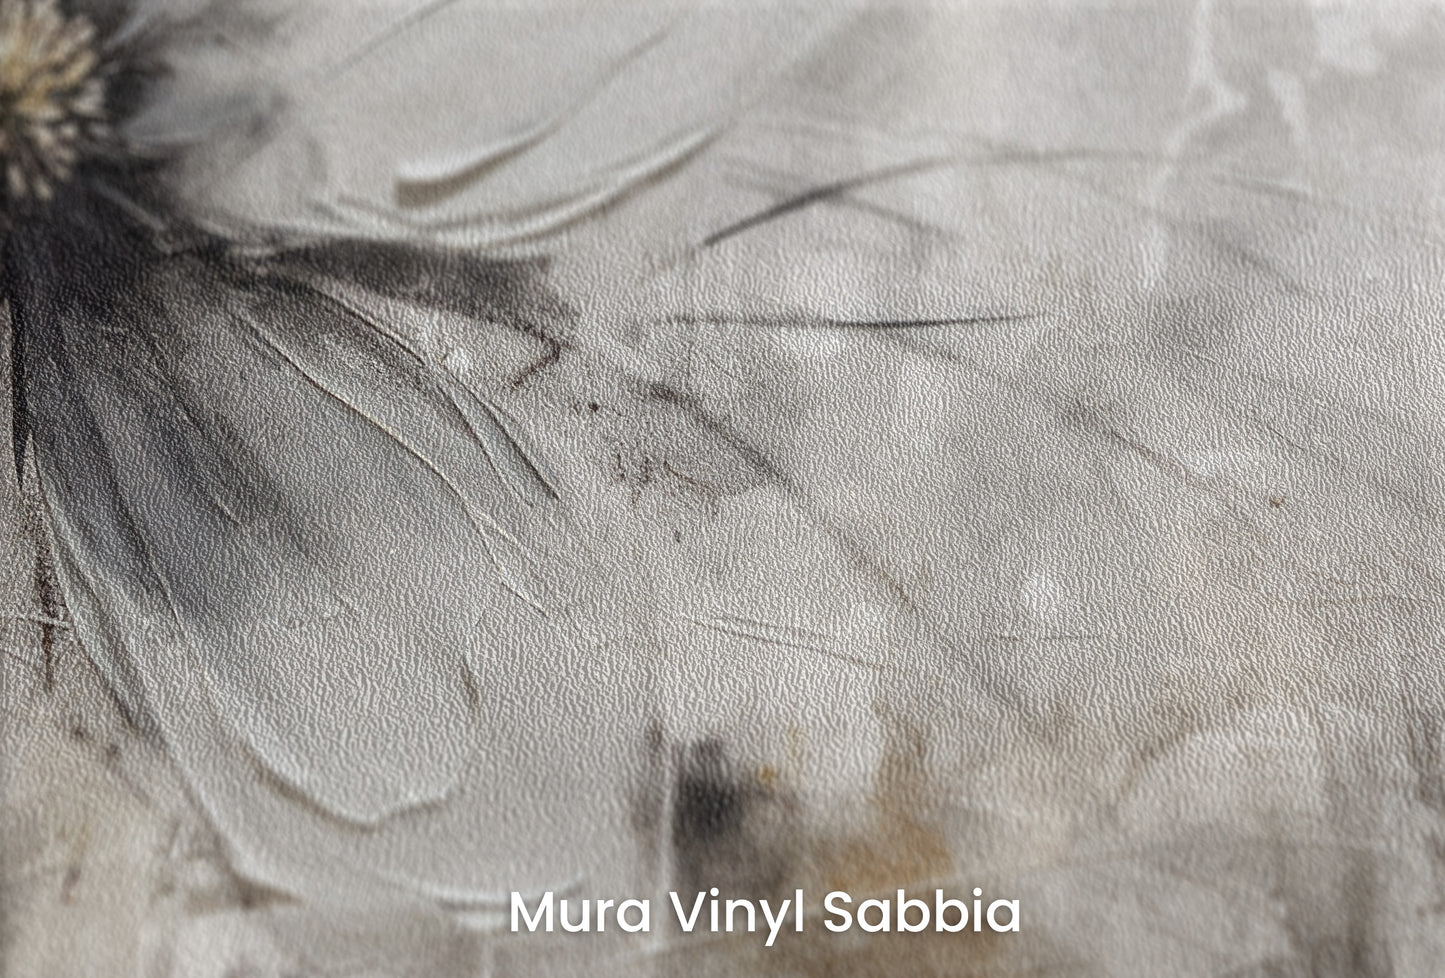 Zbliżenie na artystyczną fototapetę o nazwie MONOCHROME FLORAL ELEGANCE na podłożu Mura Vinyl Sabbia struktura grubego ziarna piasku.